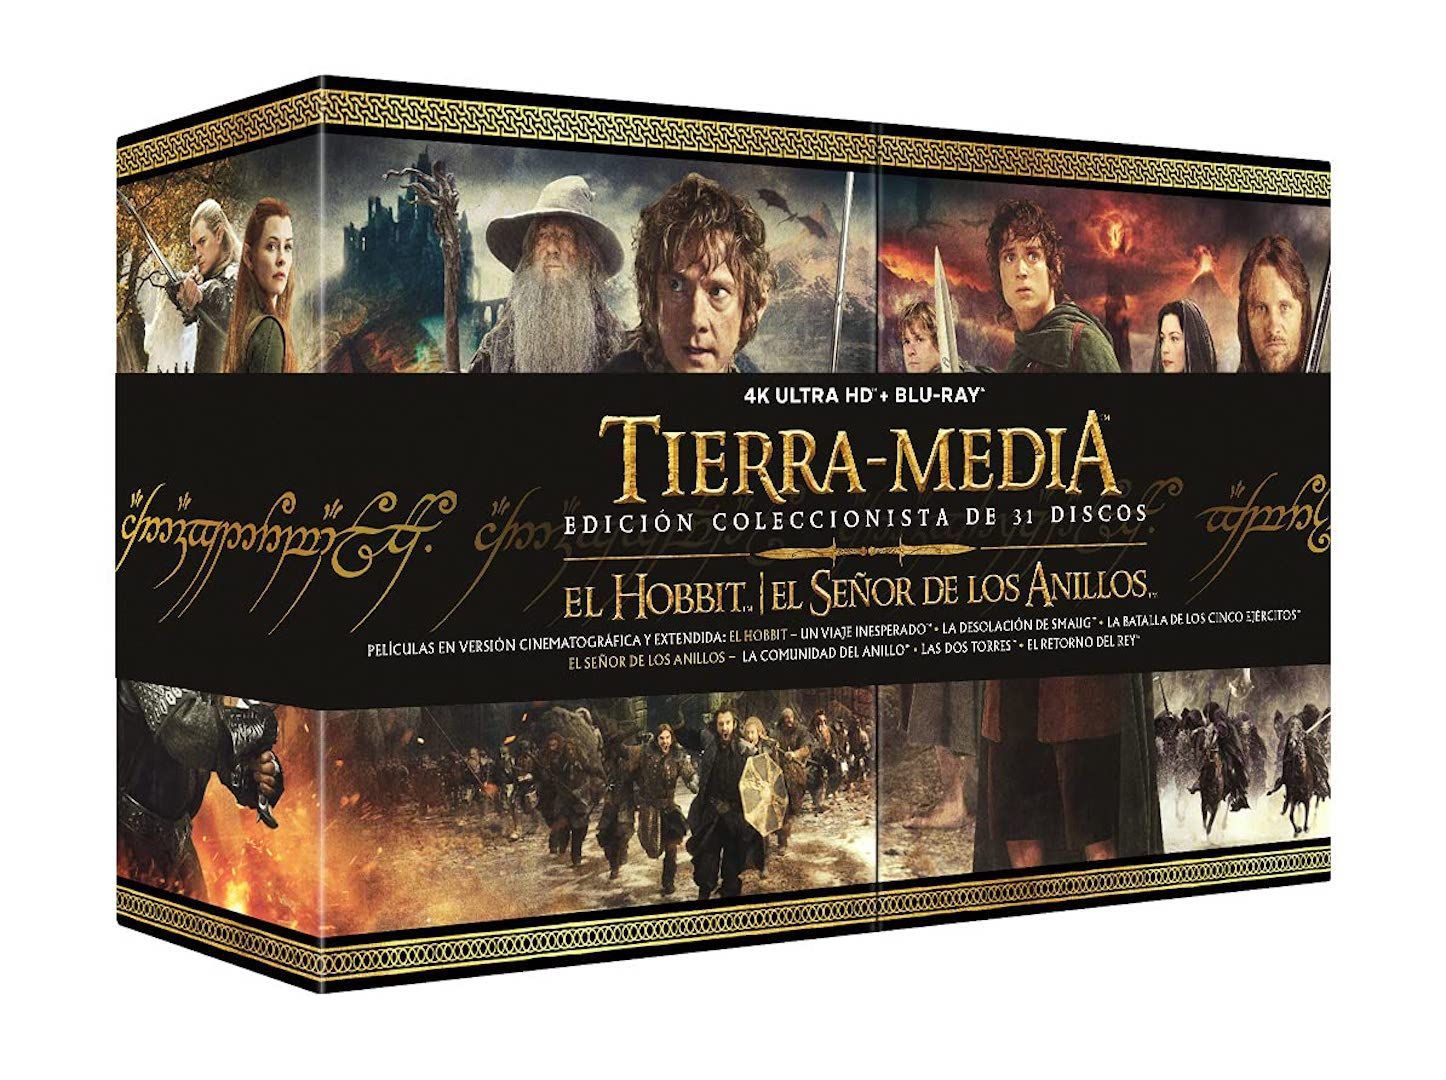 La edición coleccionista la Tierra Media en 4K y Blu-ray llegará en noviembre a España - Vandal Random